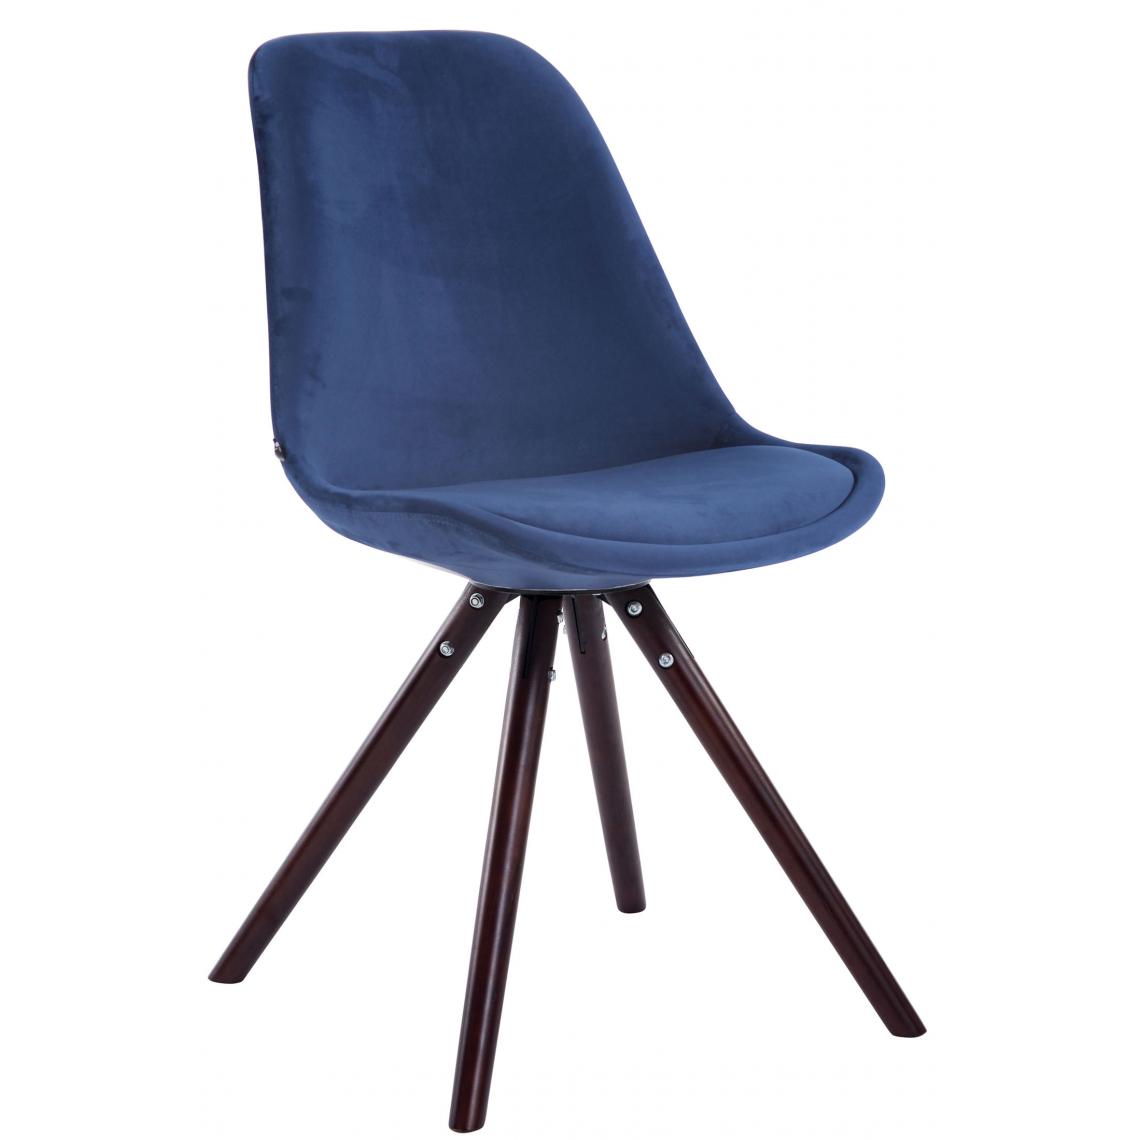 Icaverne - Moderne Chaise visiteur ronde en velours reference Katmandou cappuccino couleur bleu - Chaises